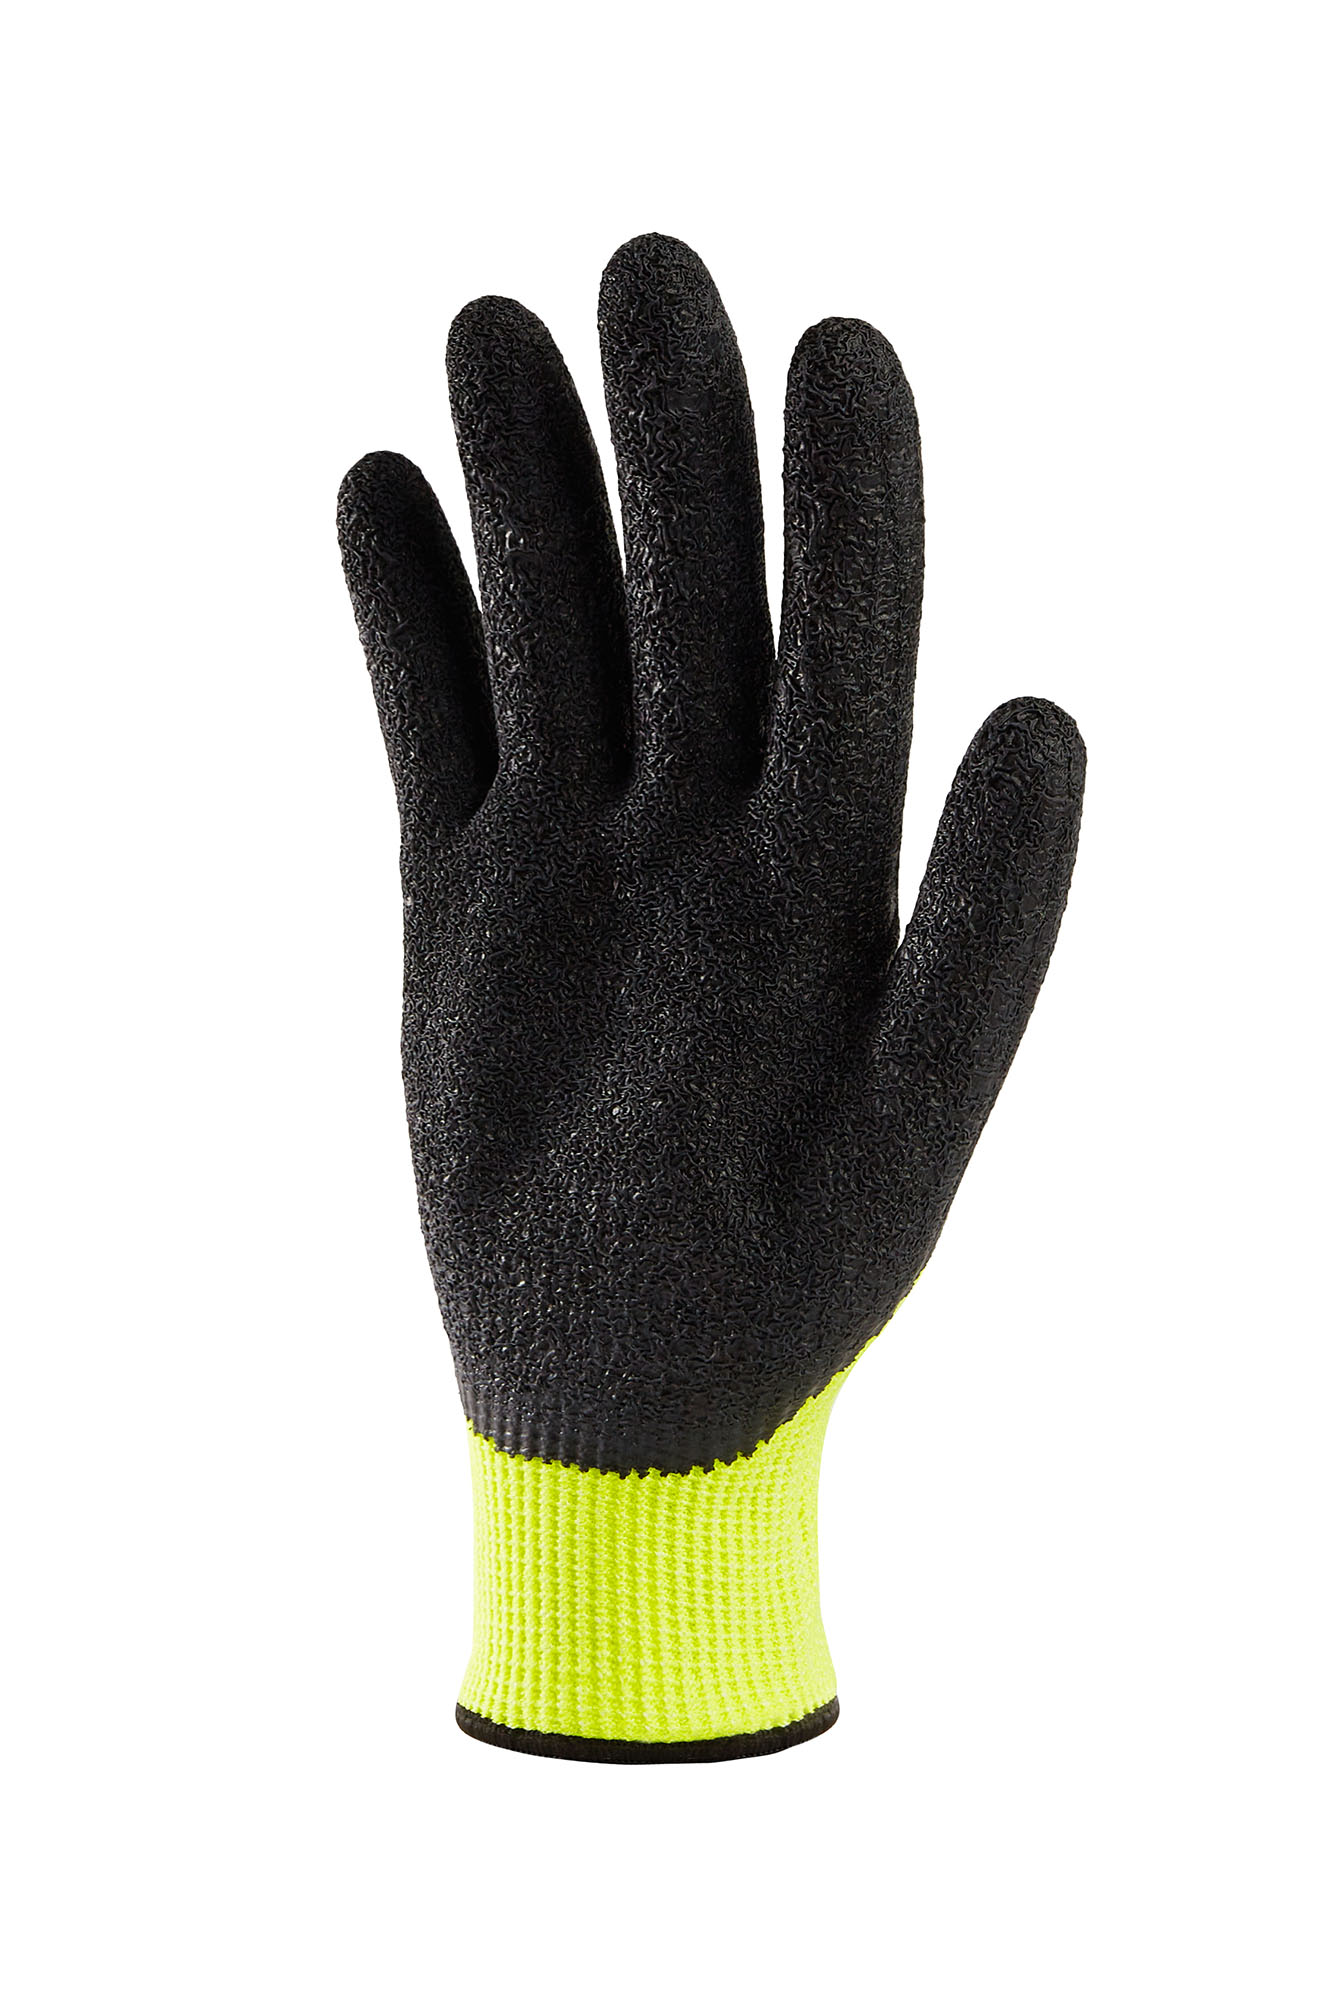 wXw-Rizcut-5 Cut Resistance Gloves - WorkXwear